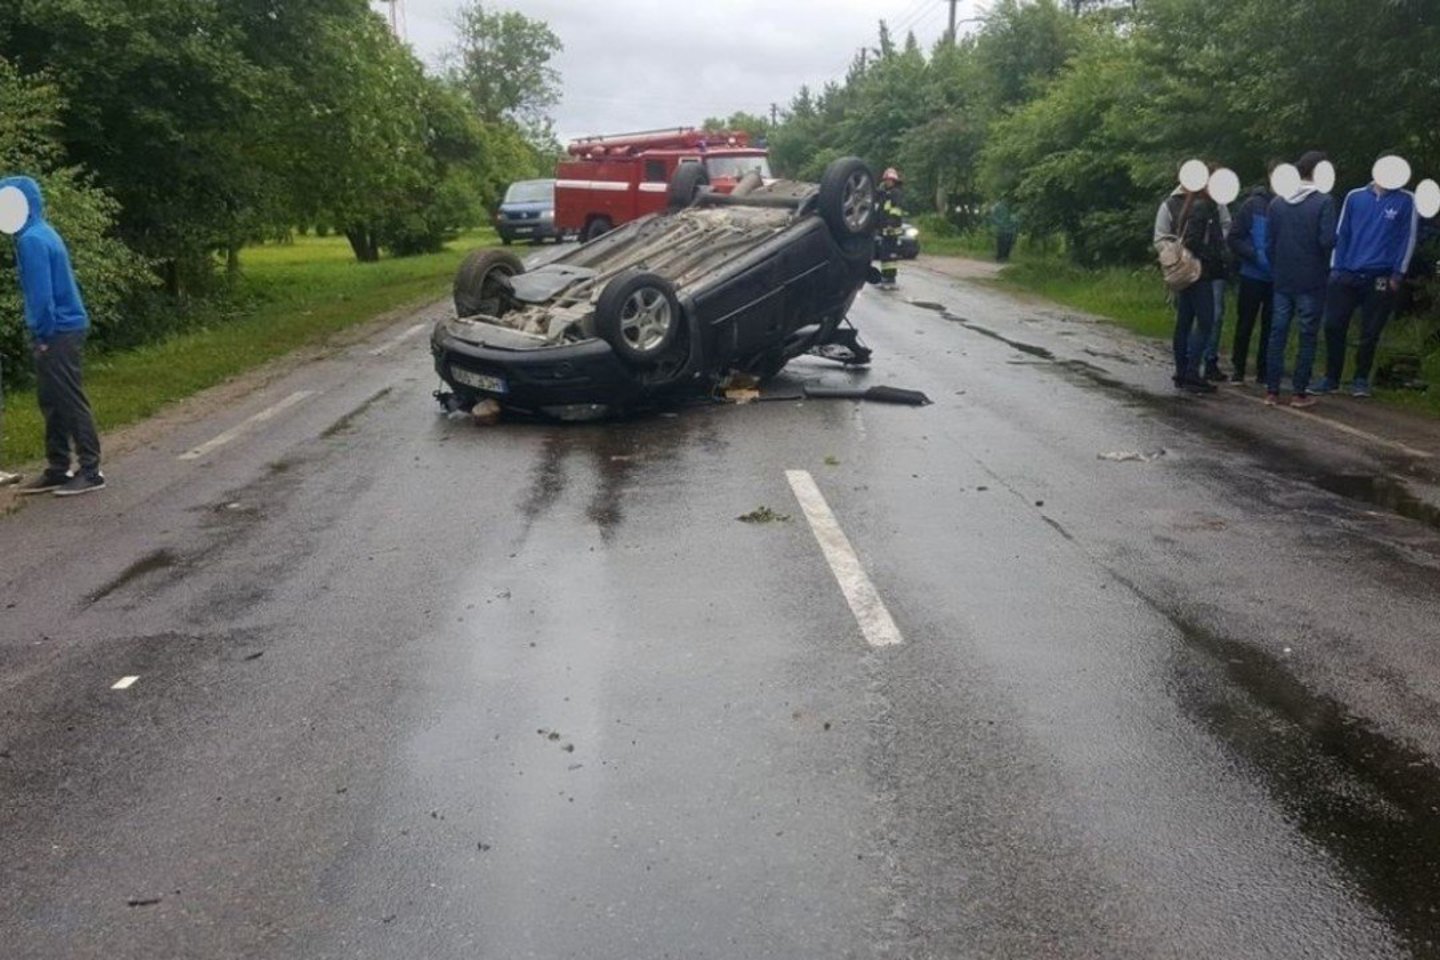  Per šią avariją girto patrulio sužeista Kėdainių rajono gyventoja I.Saldytė kreipėsi į teismą dėl žalos atlyginimo iš policijos. 